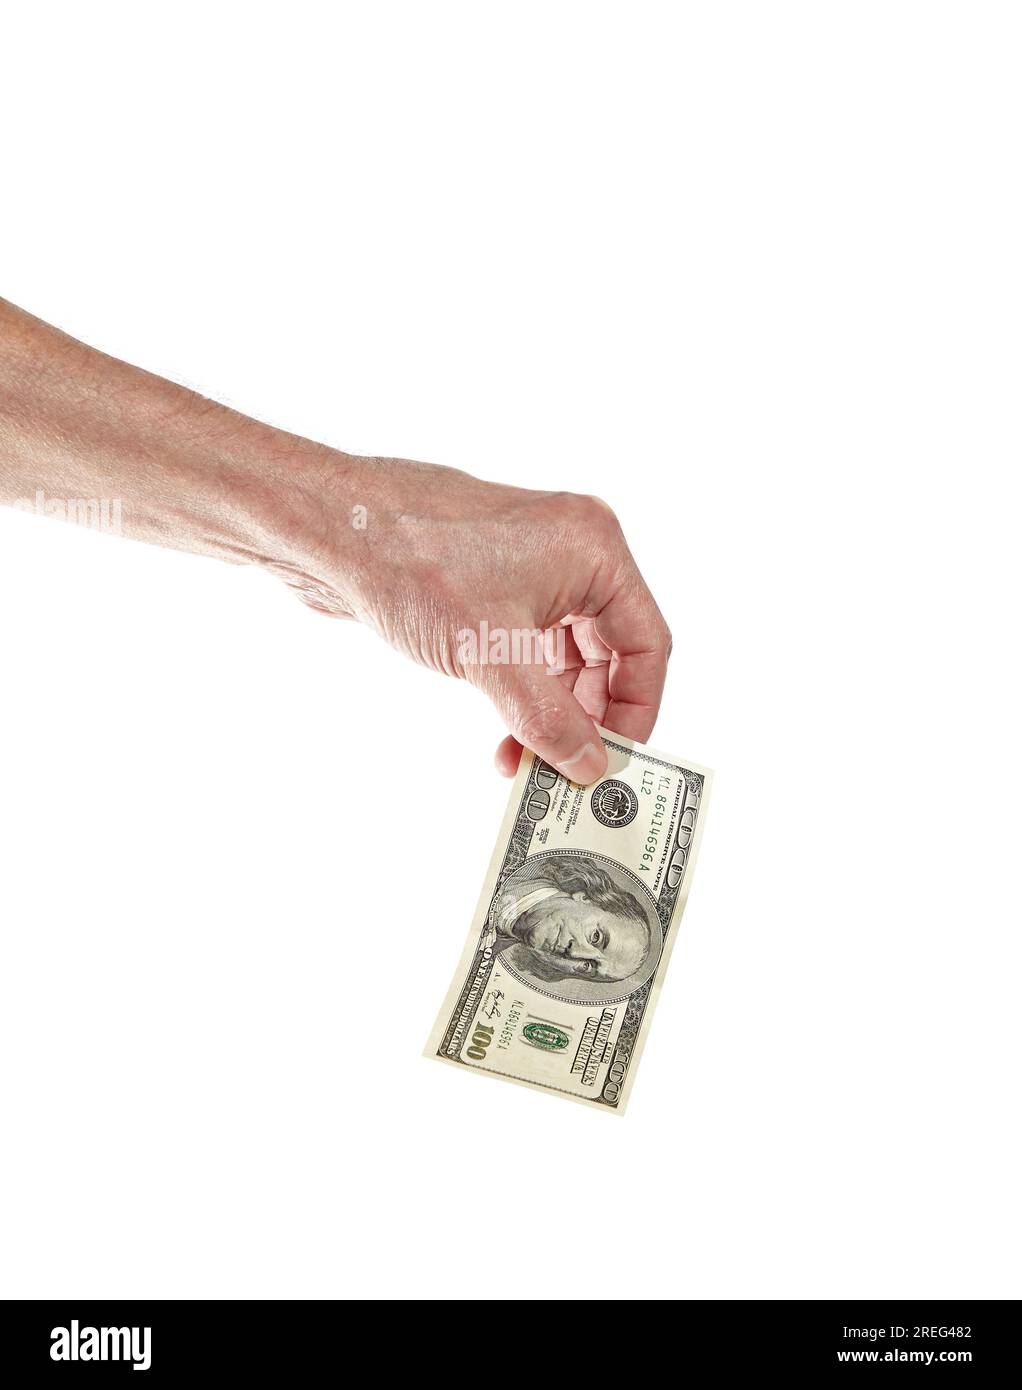 Main d'homme tenant une facture de 100 dollars isolée sur fond blanc. Une facture de cent dollars dans la main de l'homme à payer et donner Banque D'Images